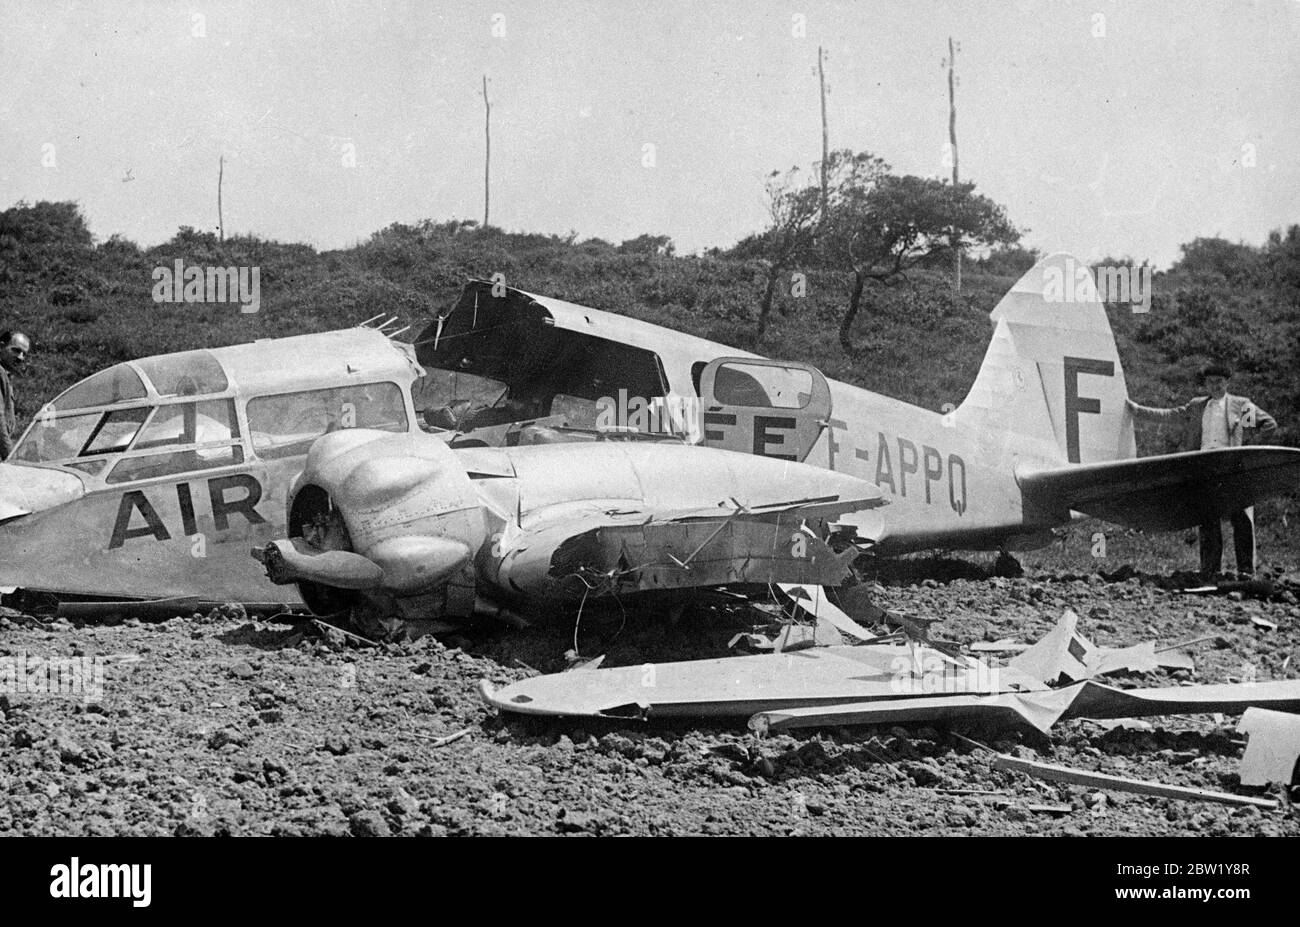 Französische Flugzeuge schossen in der Nähe von Bilbao von Rebellen ab. Es ist das erste Bild, das von den Trümmern des französischen Linienflugzeugs der Air Pyrenees Company veröffentlicht wird, das von einem spanischen Rebellen-deutschen Heinkel-Kampfflugzeug abgeschossen wurde, während er auf seinem täglichen Flug zwischen Bayonne und Bilbao über Sopelana ging. Der Pilot und eine Passagierin erhielten Verletzungen nach einer geschickten Pfannkuchenlandung. Foto zeigt, die Wracks des französischen Verkehrsflugzeugs (F-APPO). 10. Juni 1937 Stockfoto